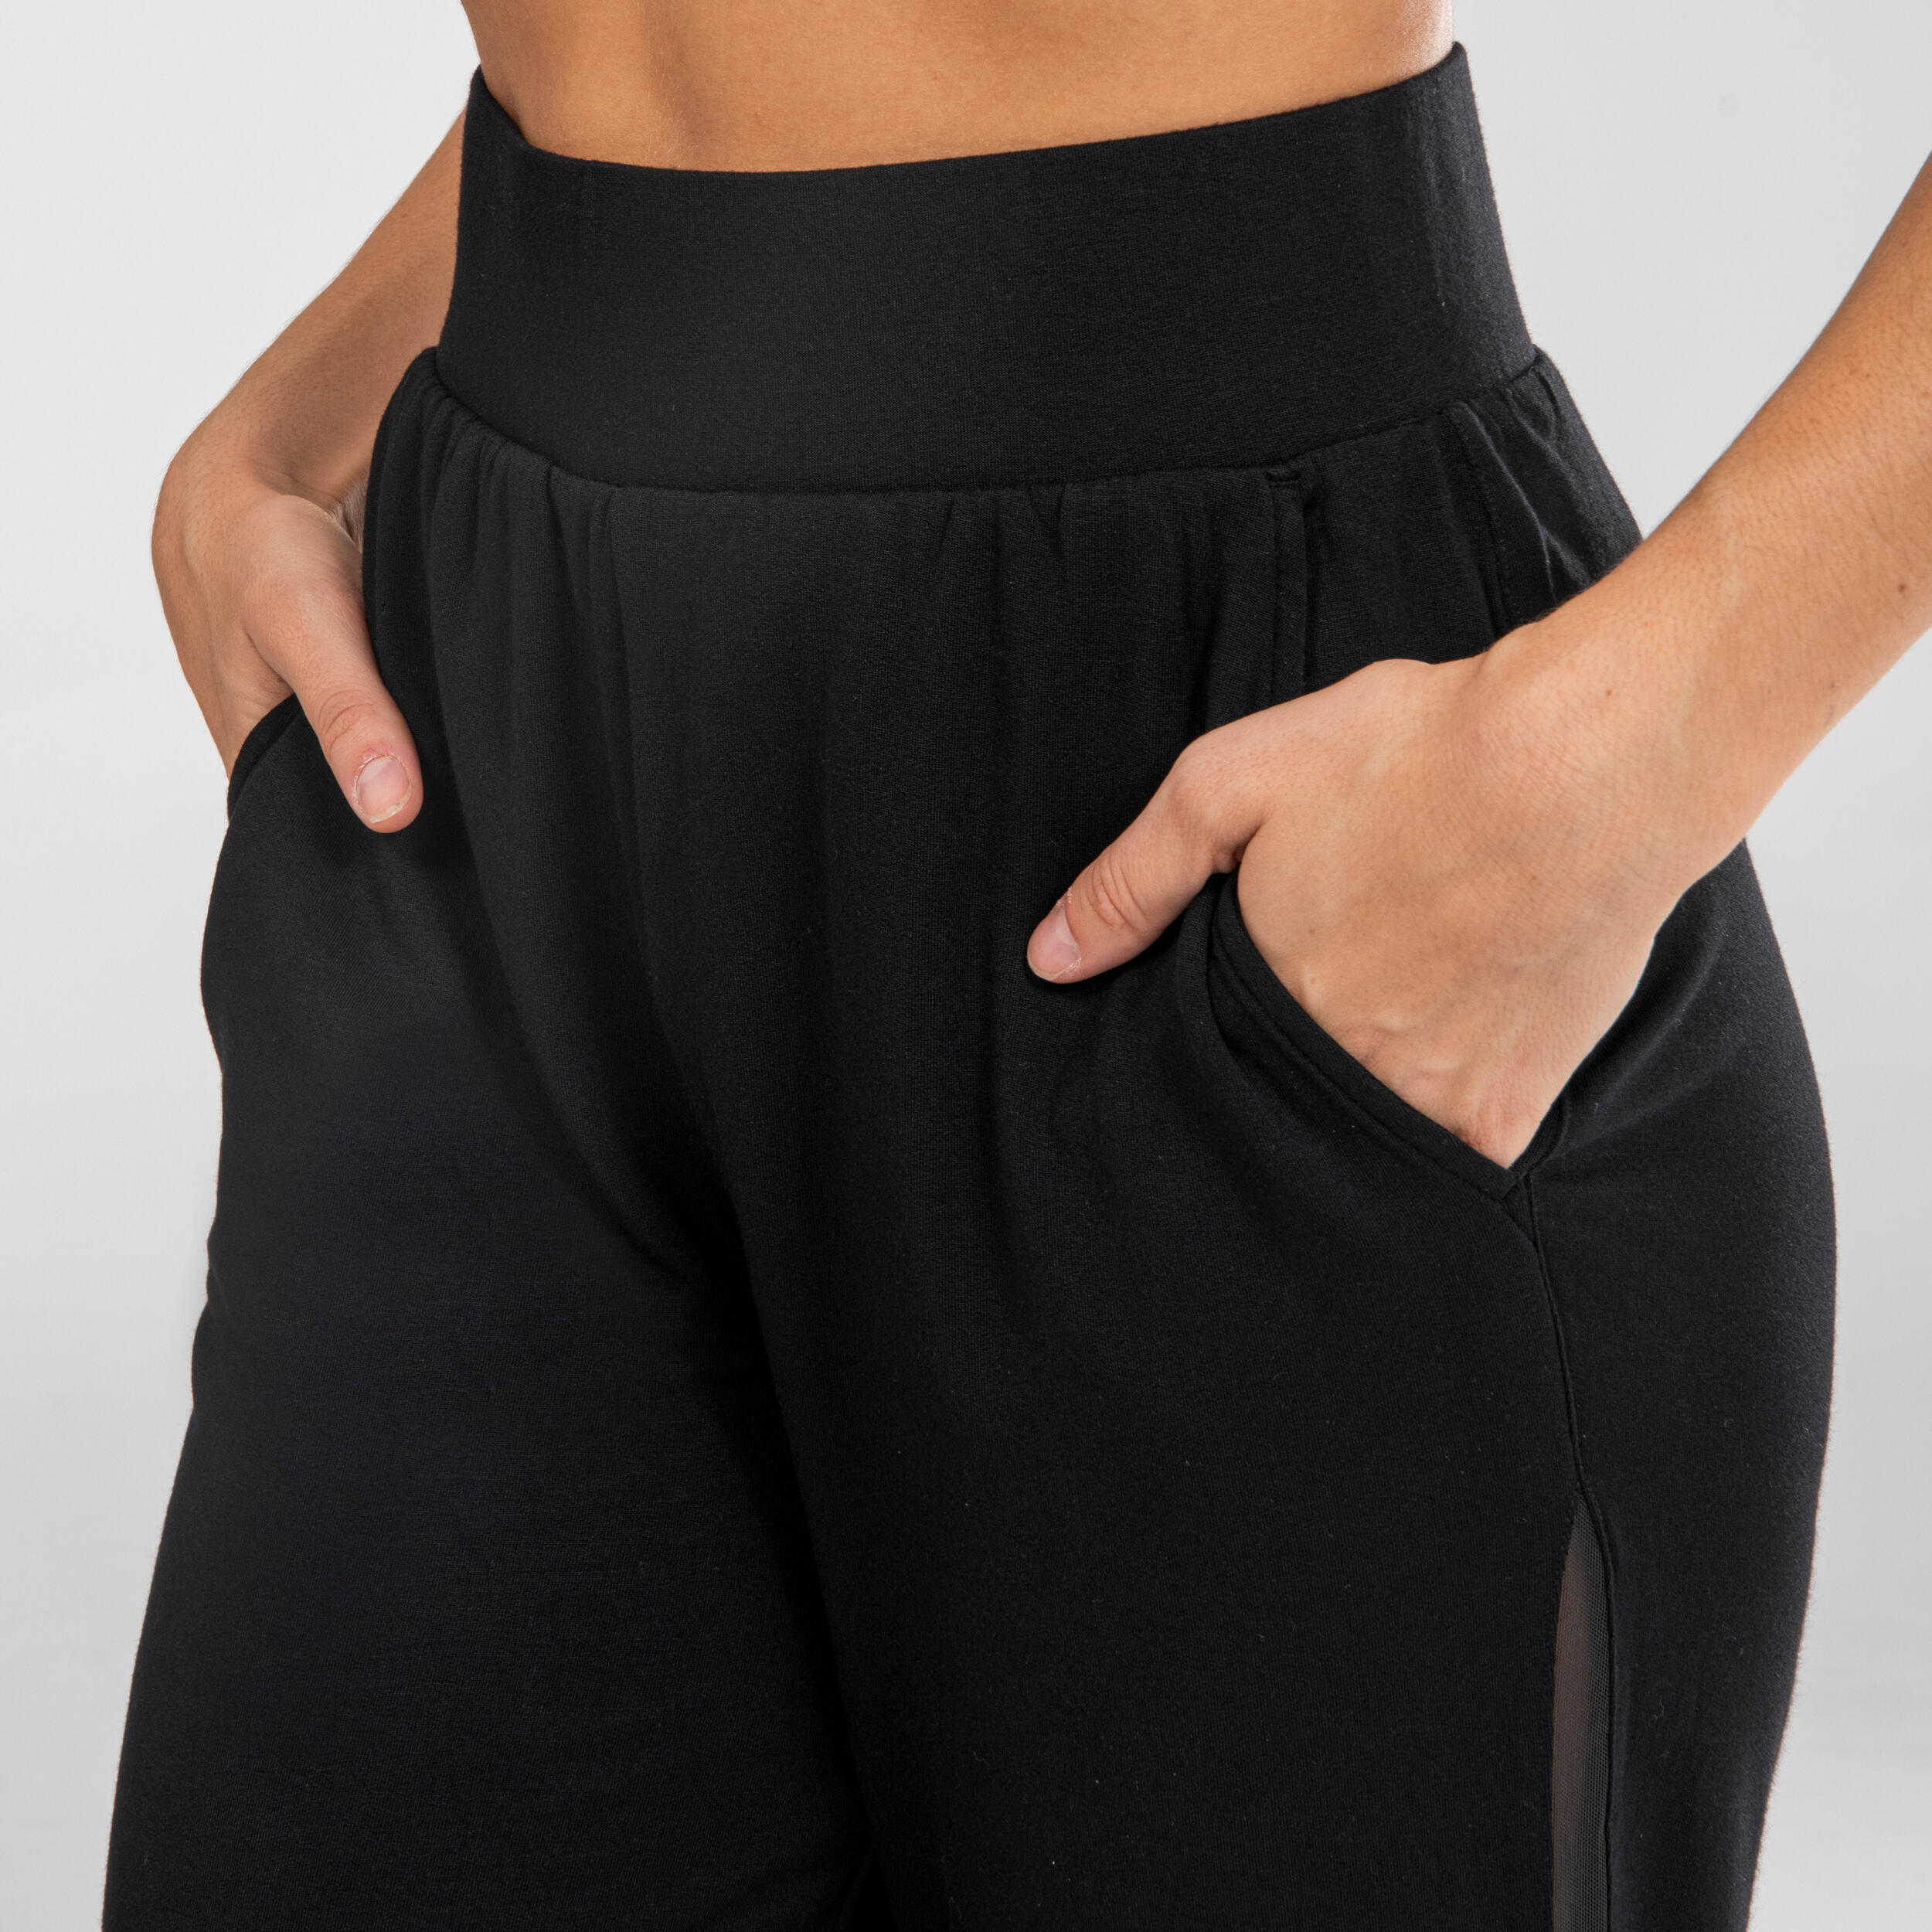 Women's Modern Dance Pants - Black - Black - Starever - Decathlon